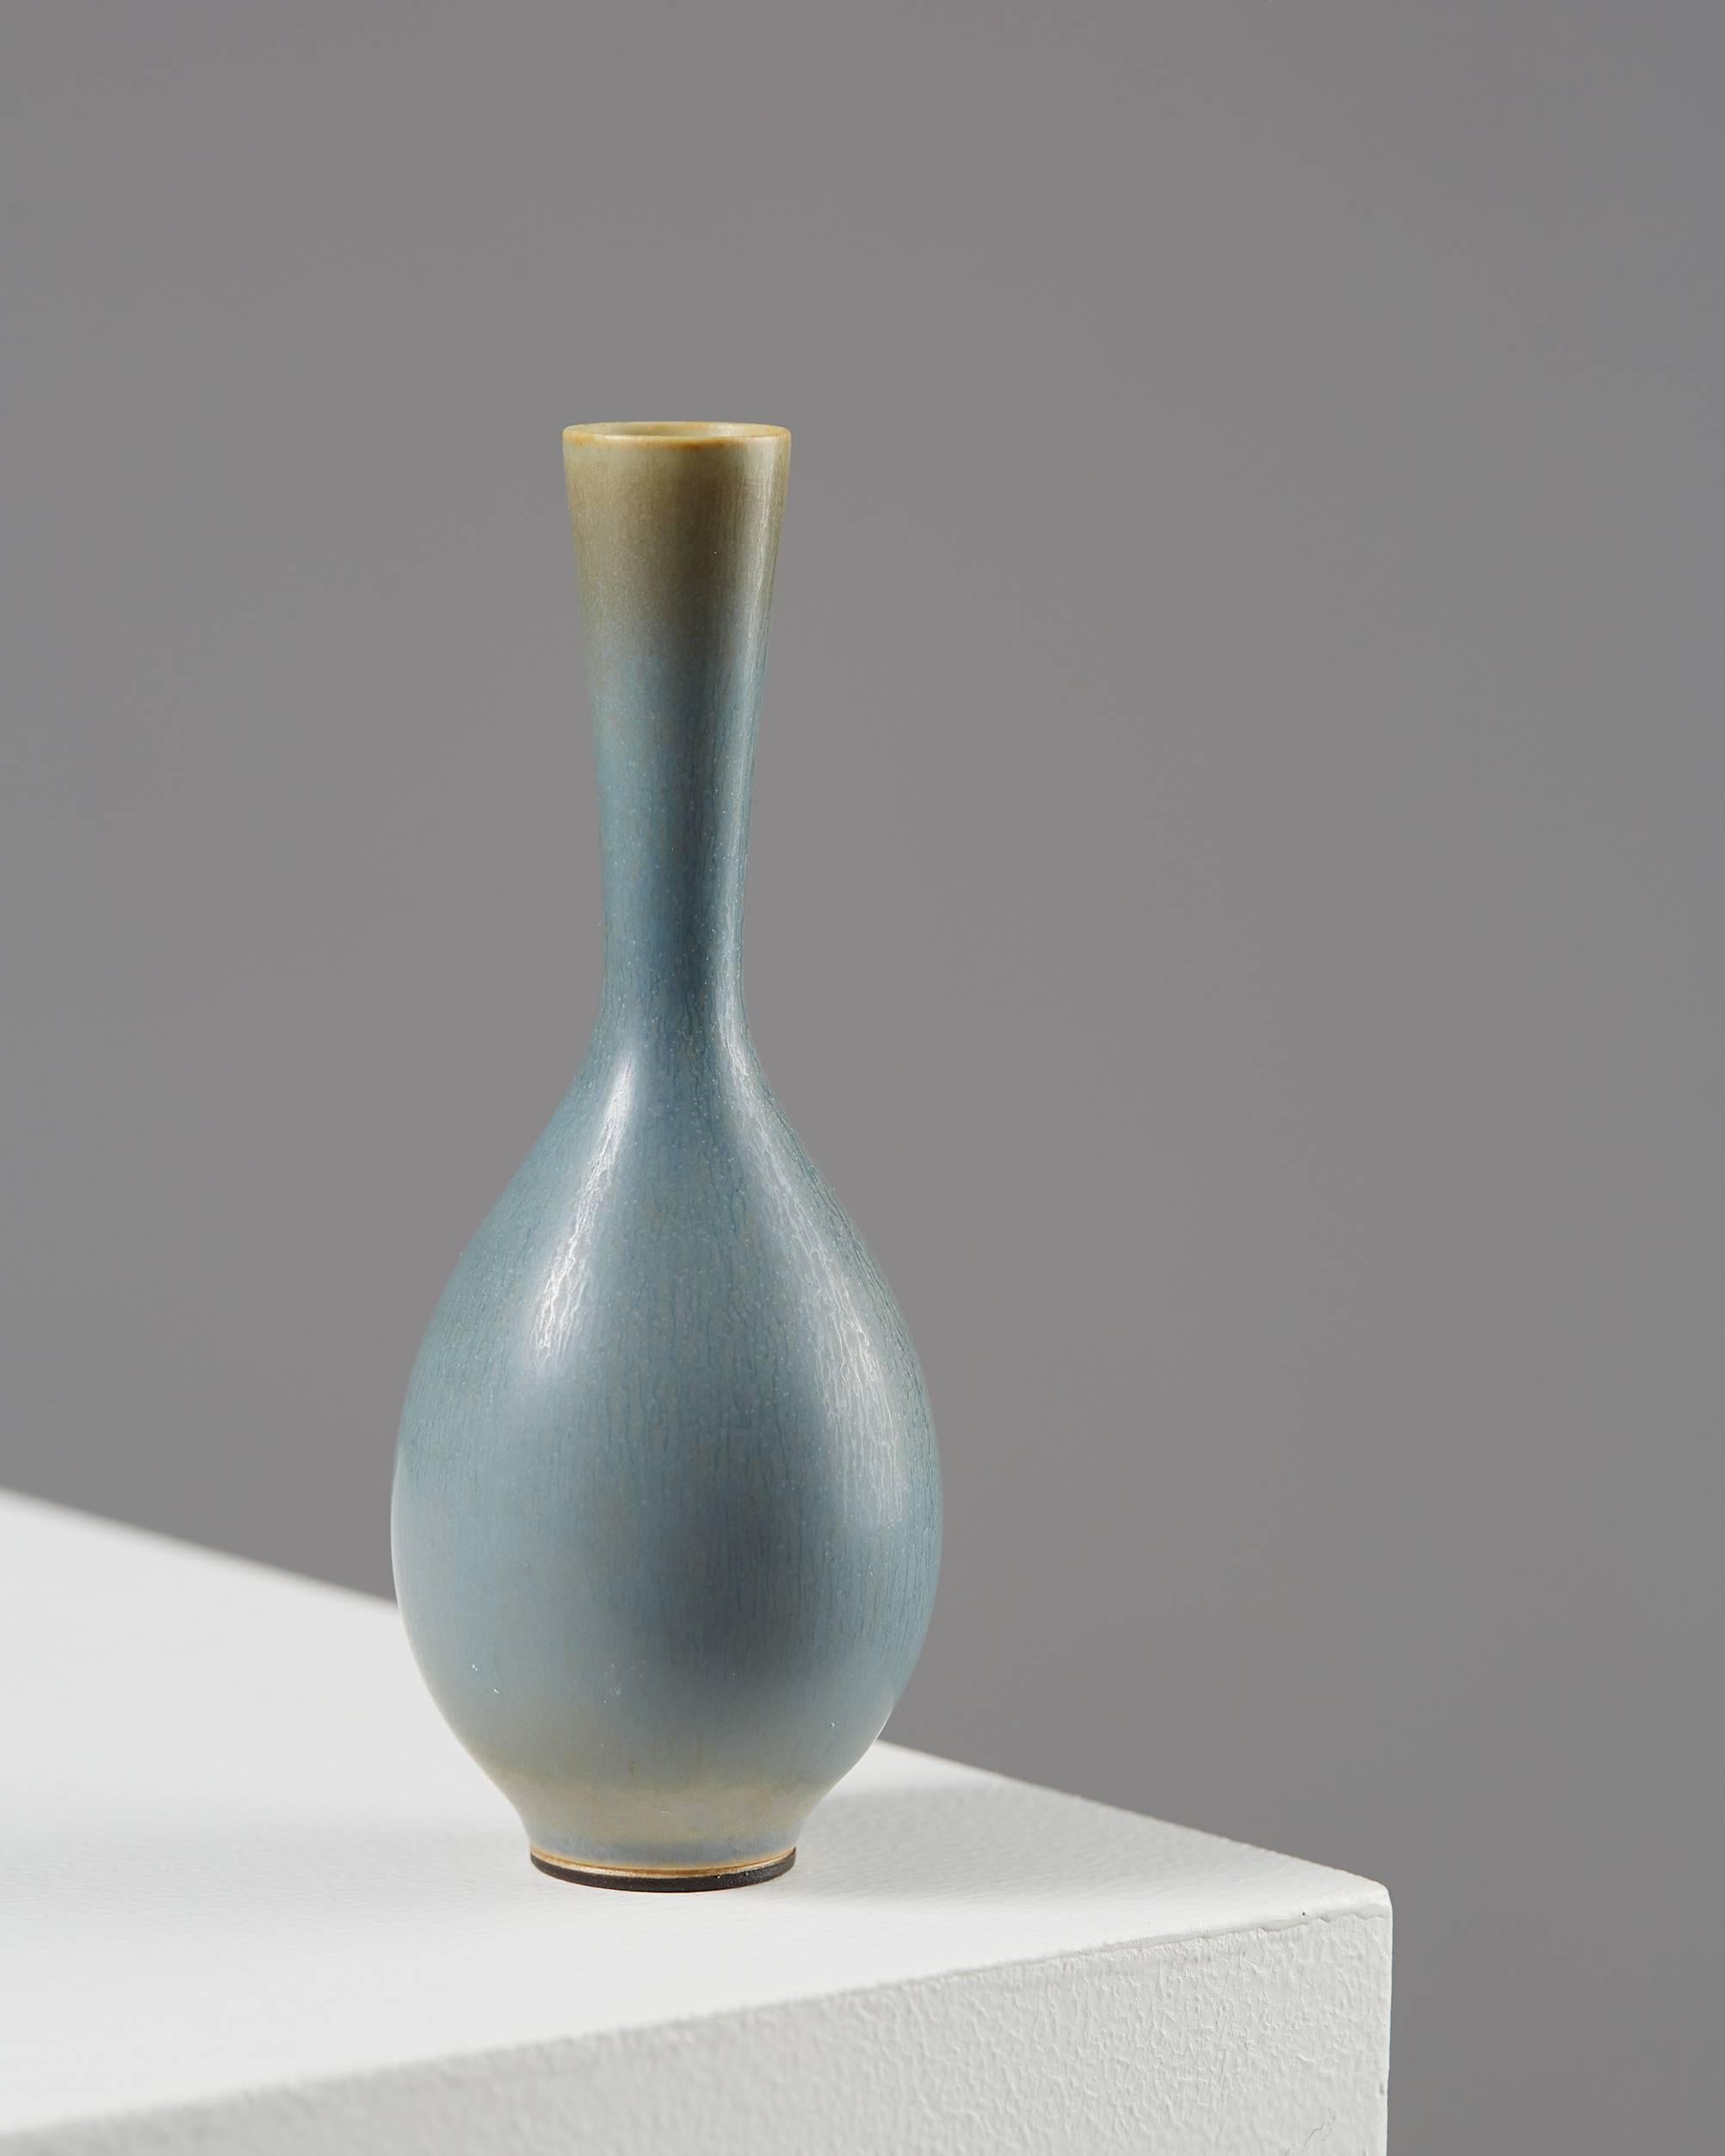 Vase designed by Berndt Friberg for Gustavsberg, Sweden, 1950s.
Stoneware.

Measures: H: 13 cm/ 5